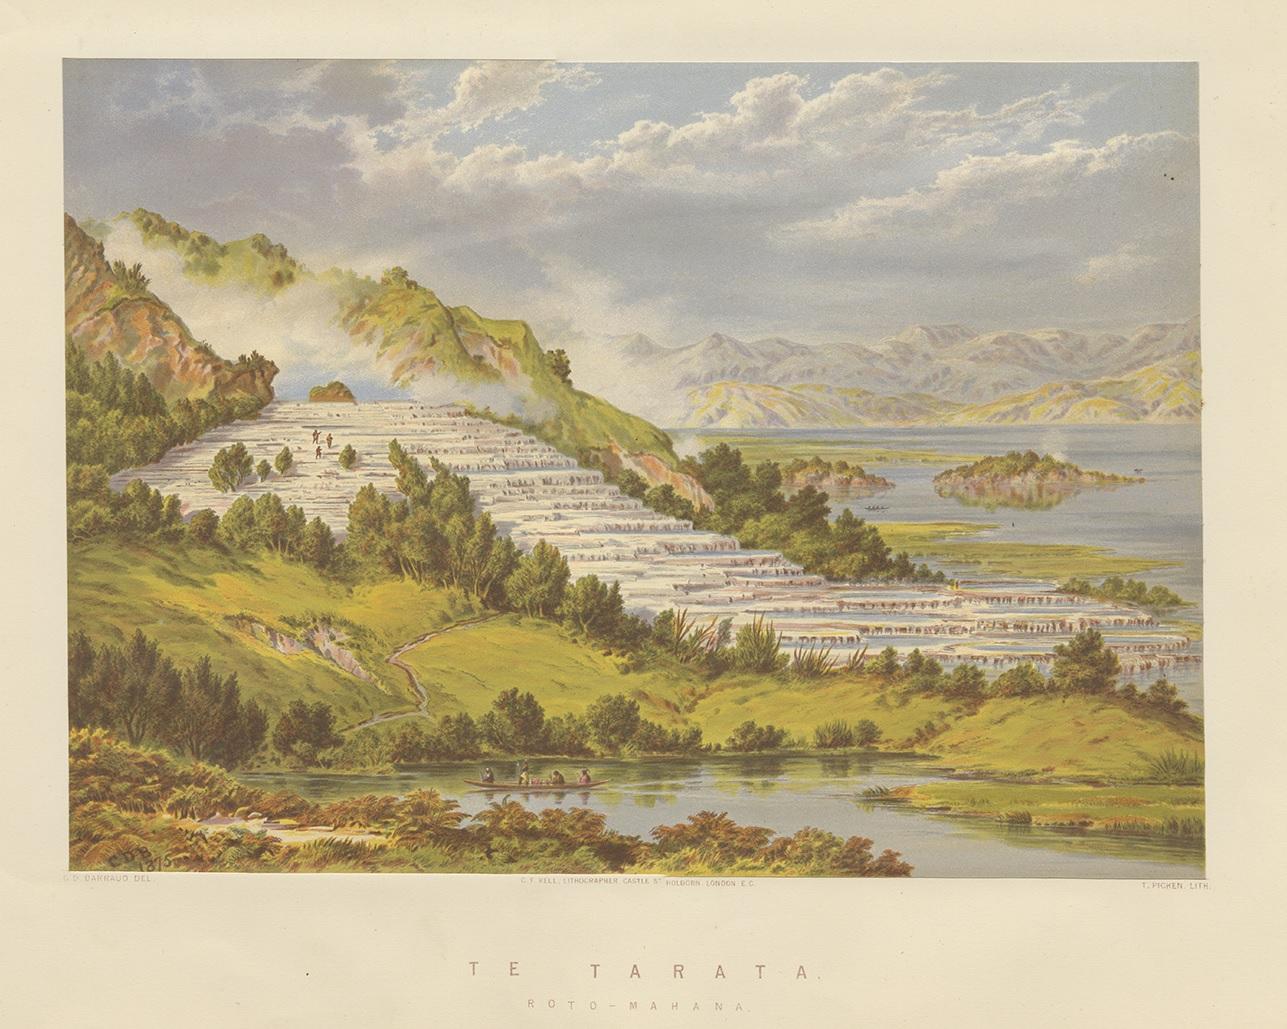 Antique print titled 'Te Tarata, Roto-Mahana'. View of the pink and white terraces. The Pink Terrace, or Te Otukapuarangi (